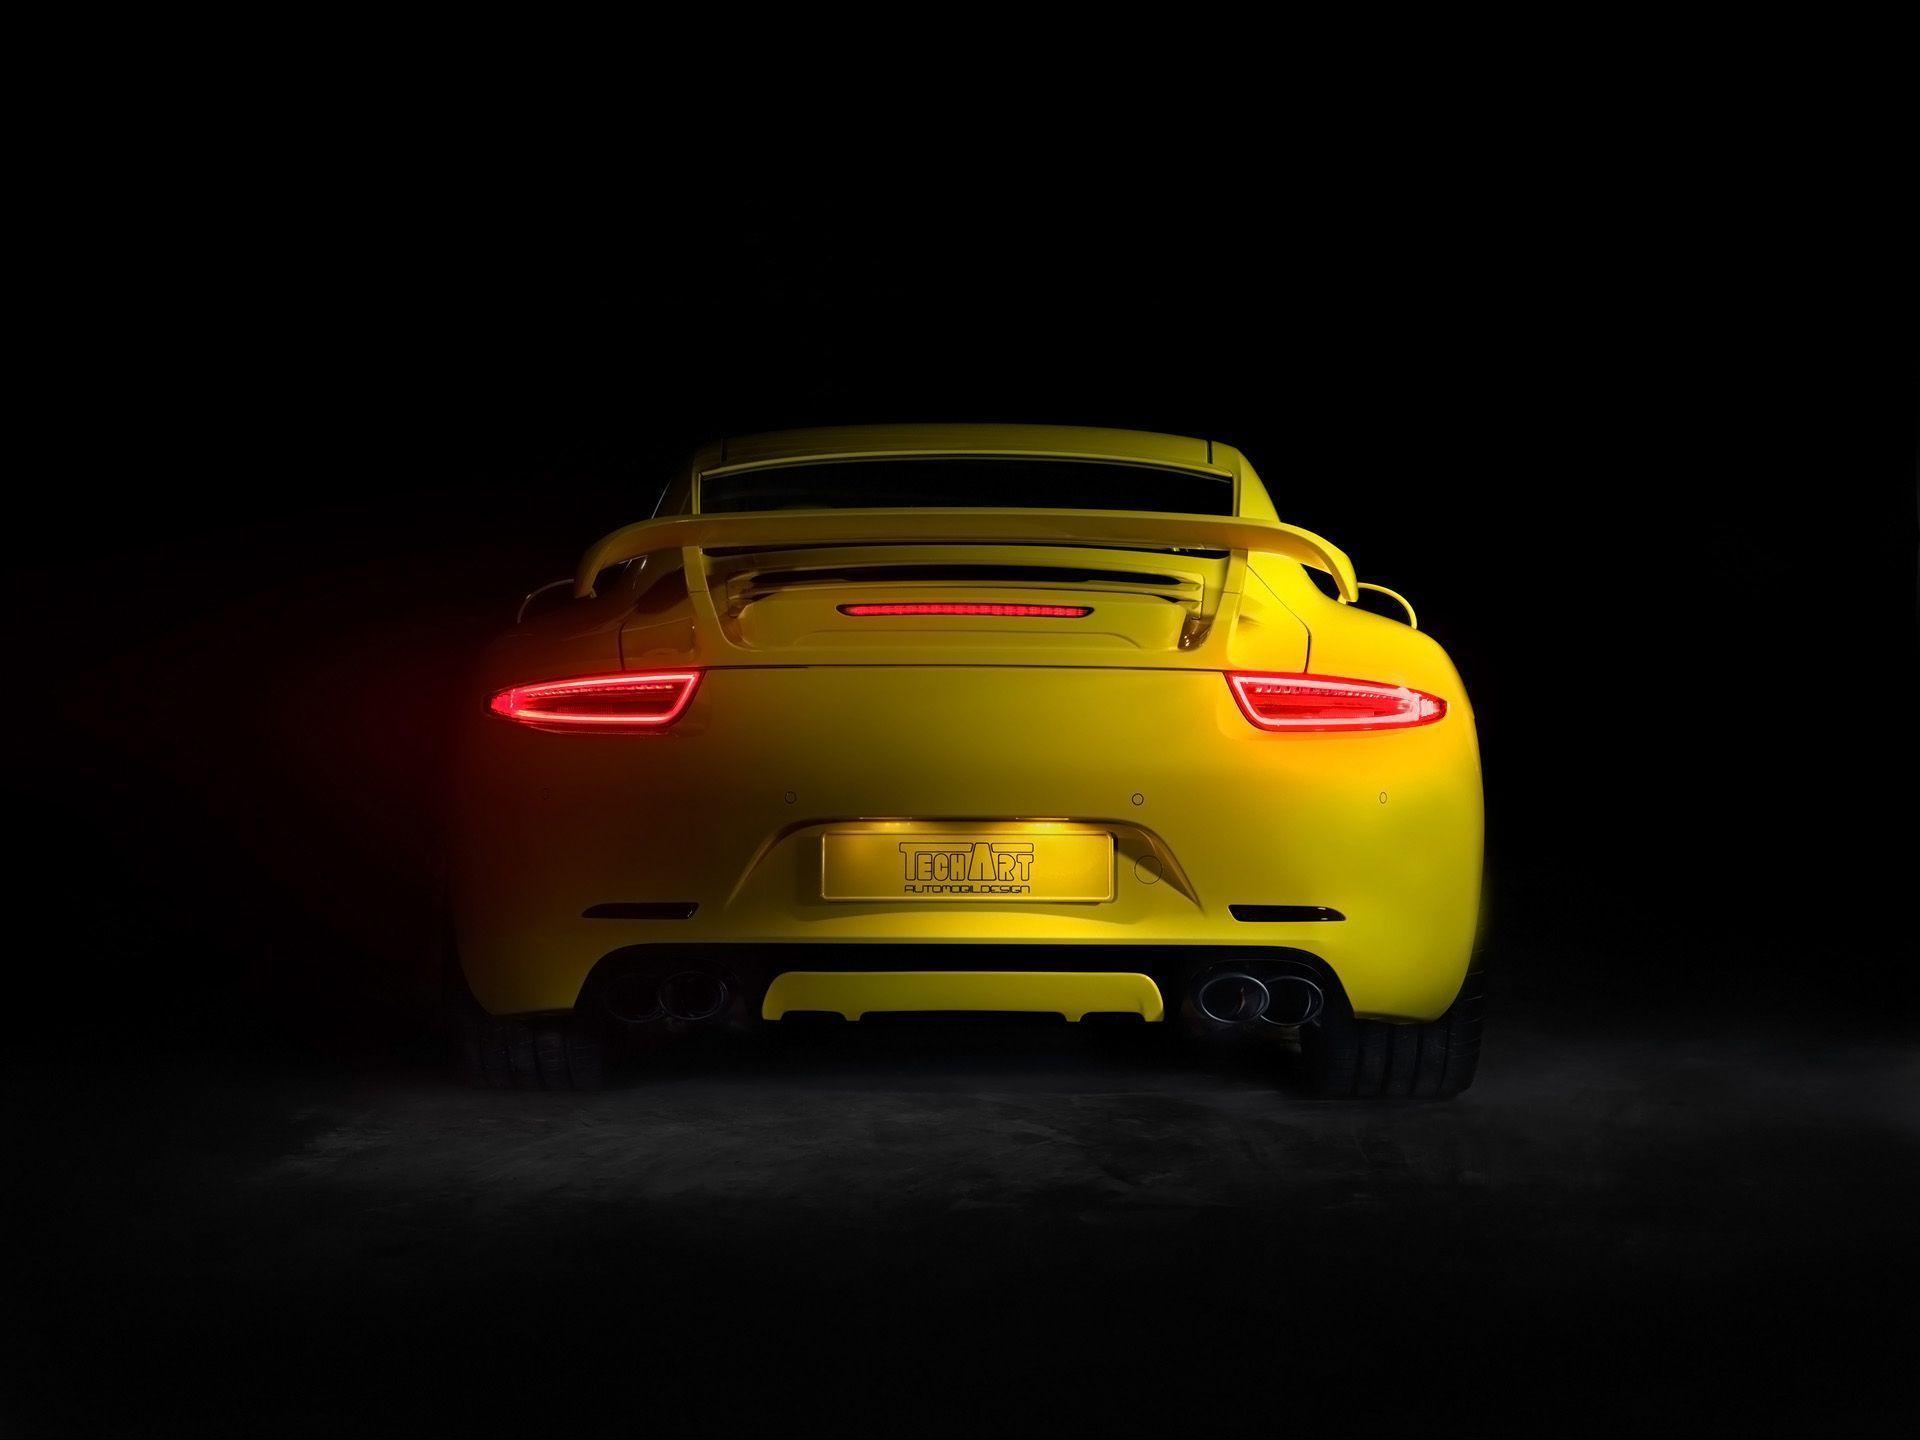 Fonds d&;écran Porsche, tous les wallpaper Porsche